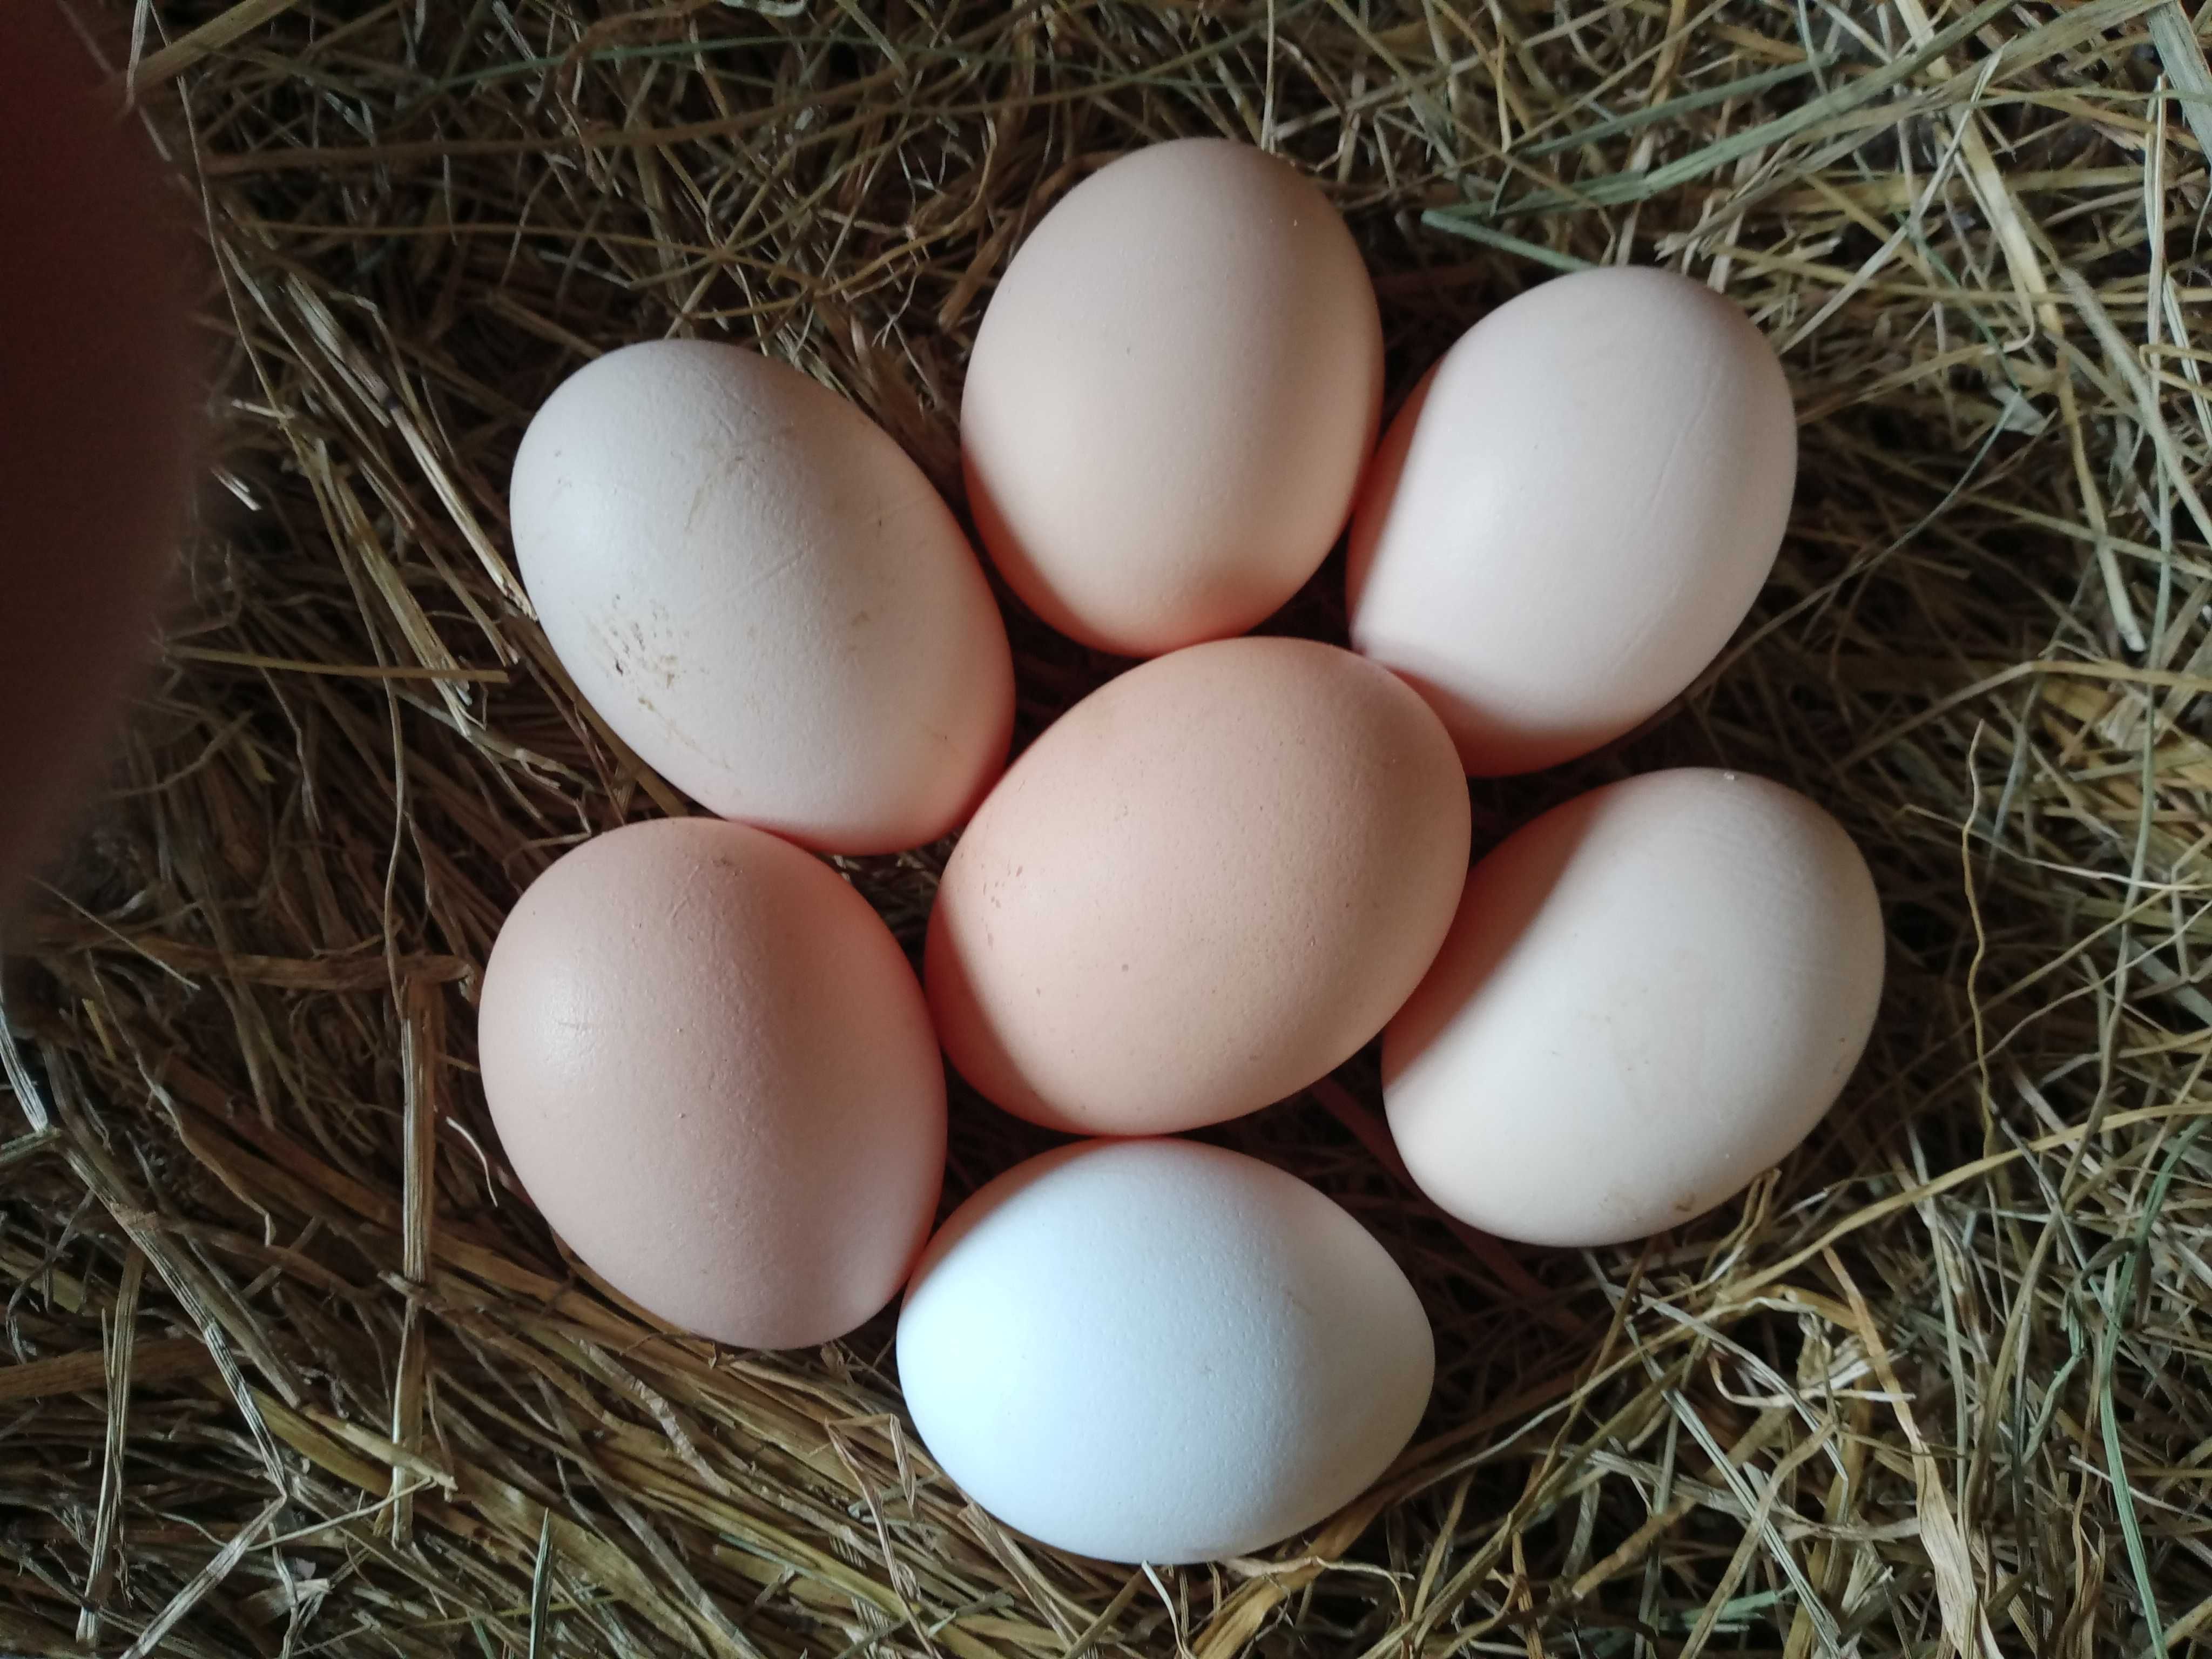 Jajka wiejskie z wolnego wybiegu jajko dowóz gratis szczegóły w opisie